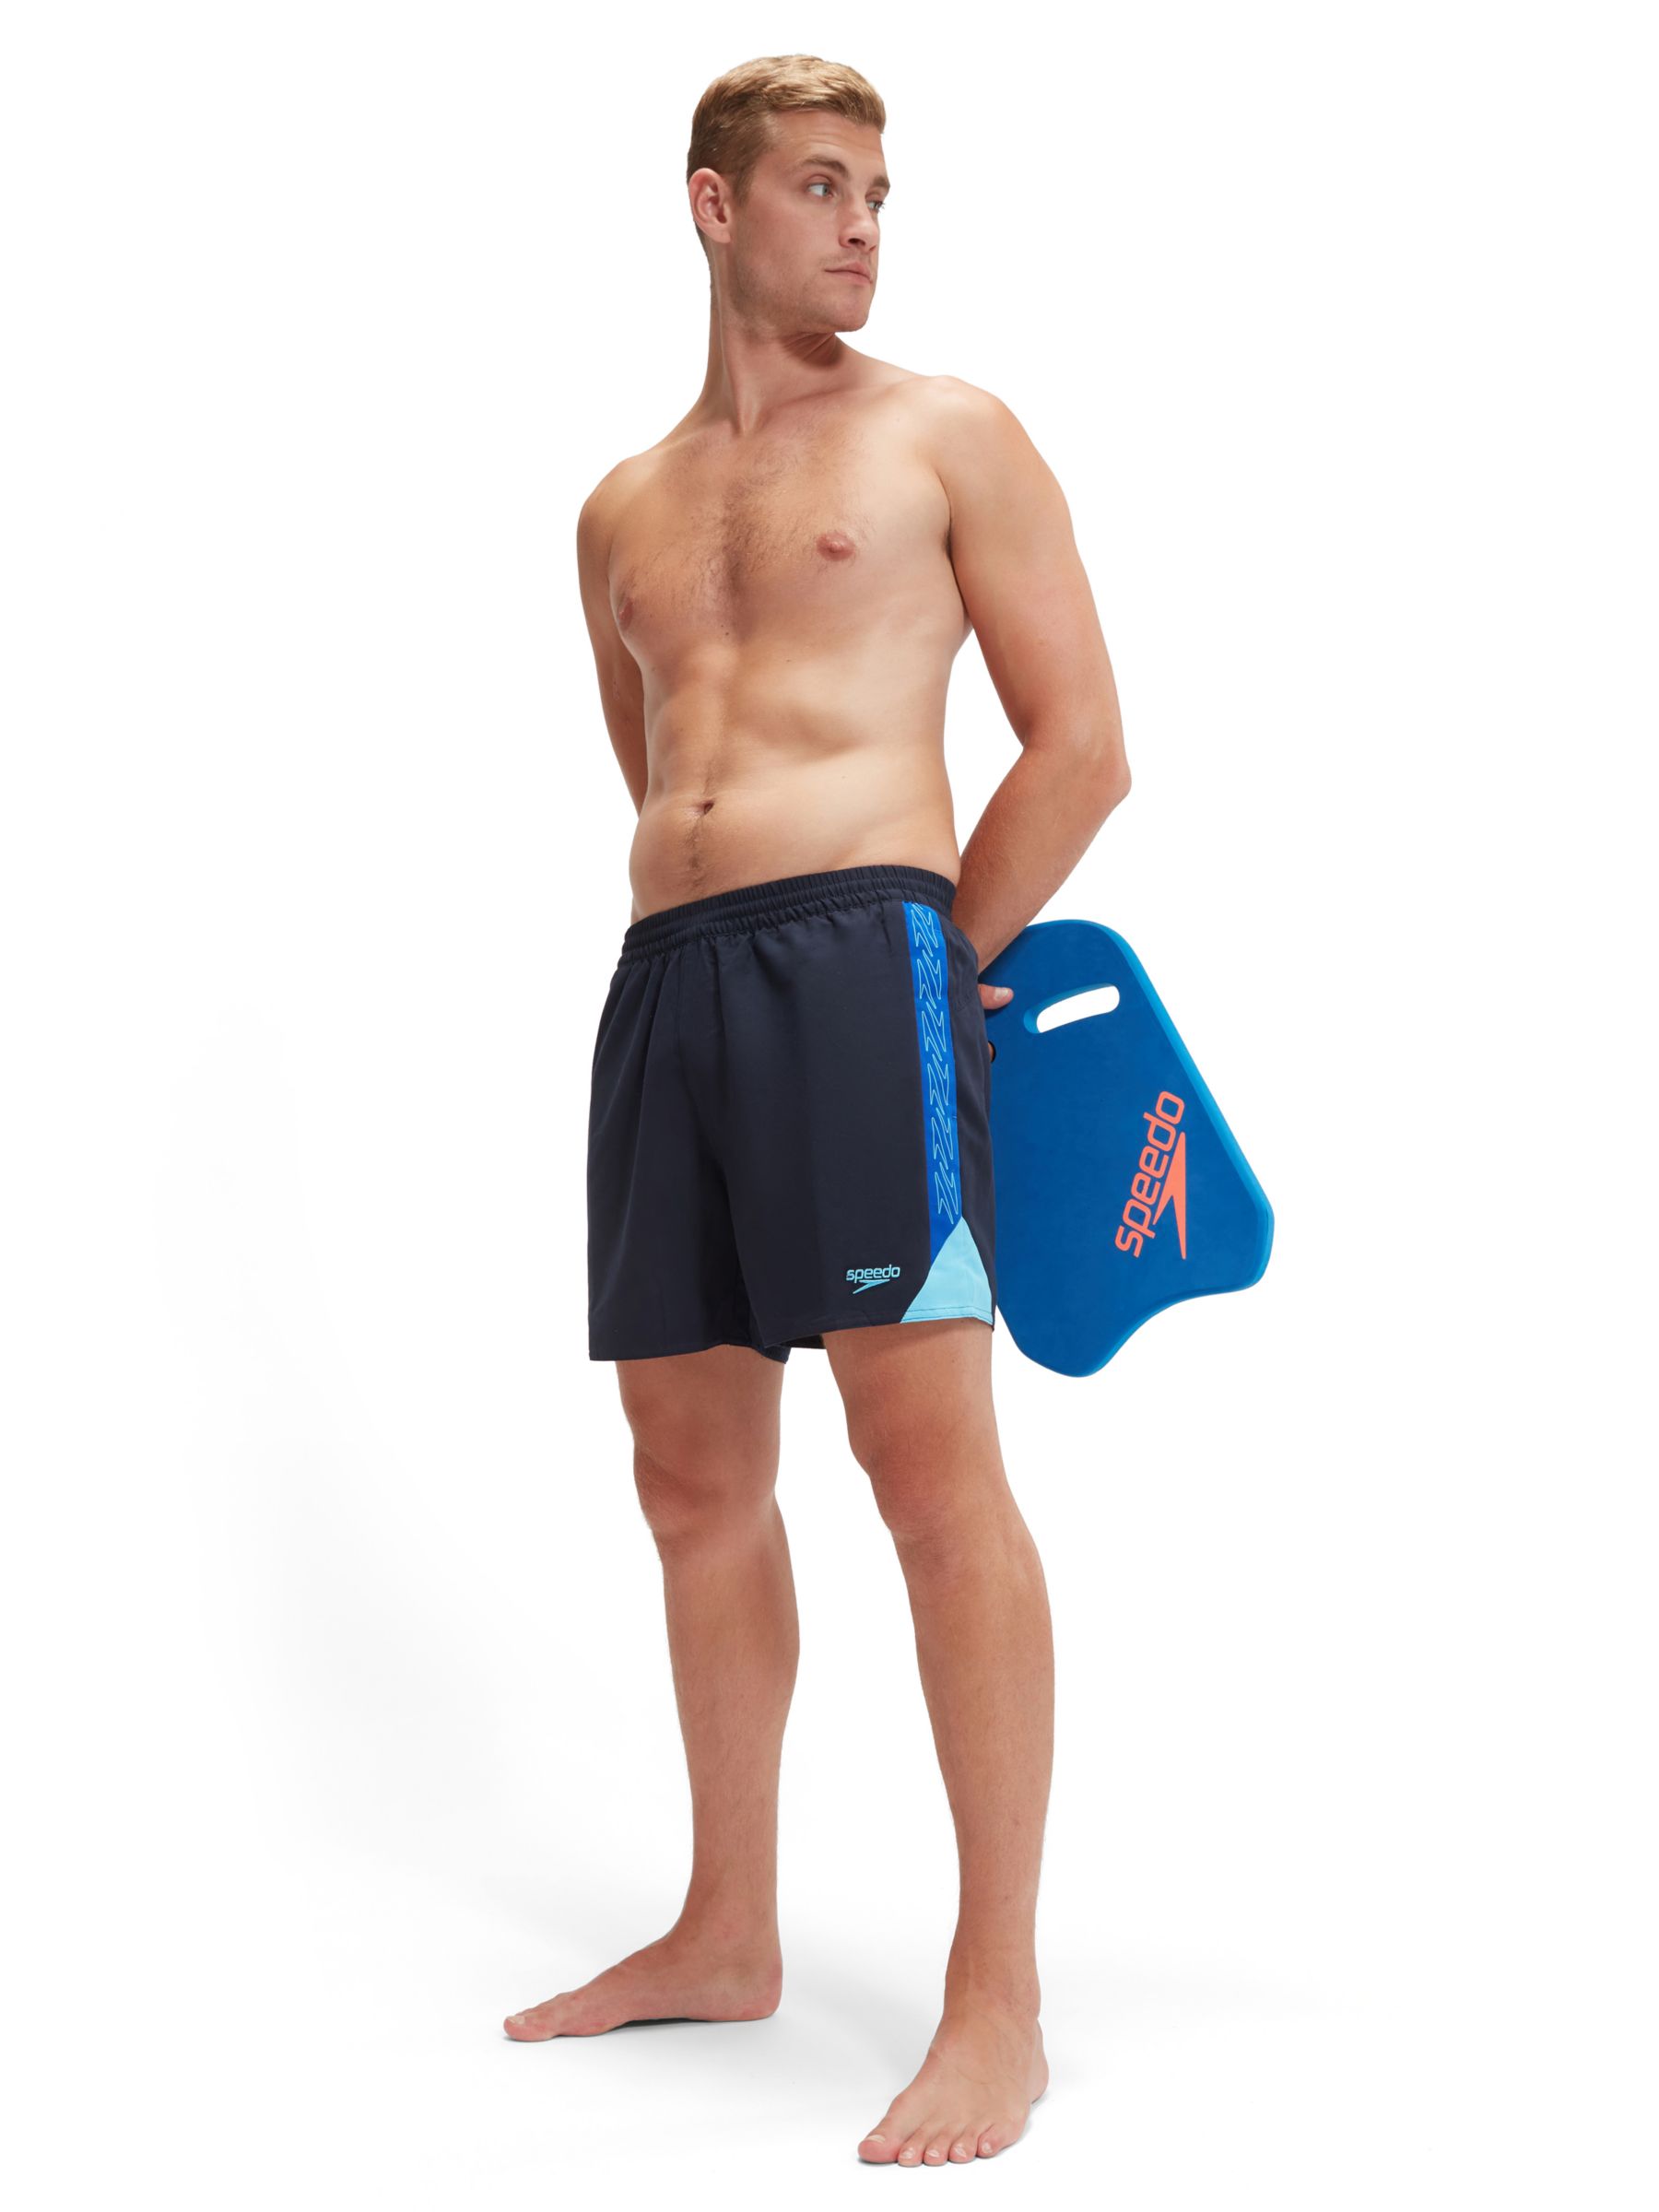 Buy Speedo Hyper Boom Splice Water Shorts, Navy Online at johnlewis.com